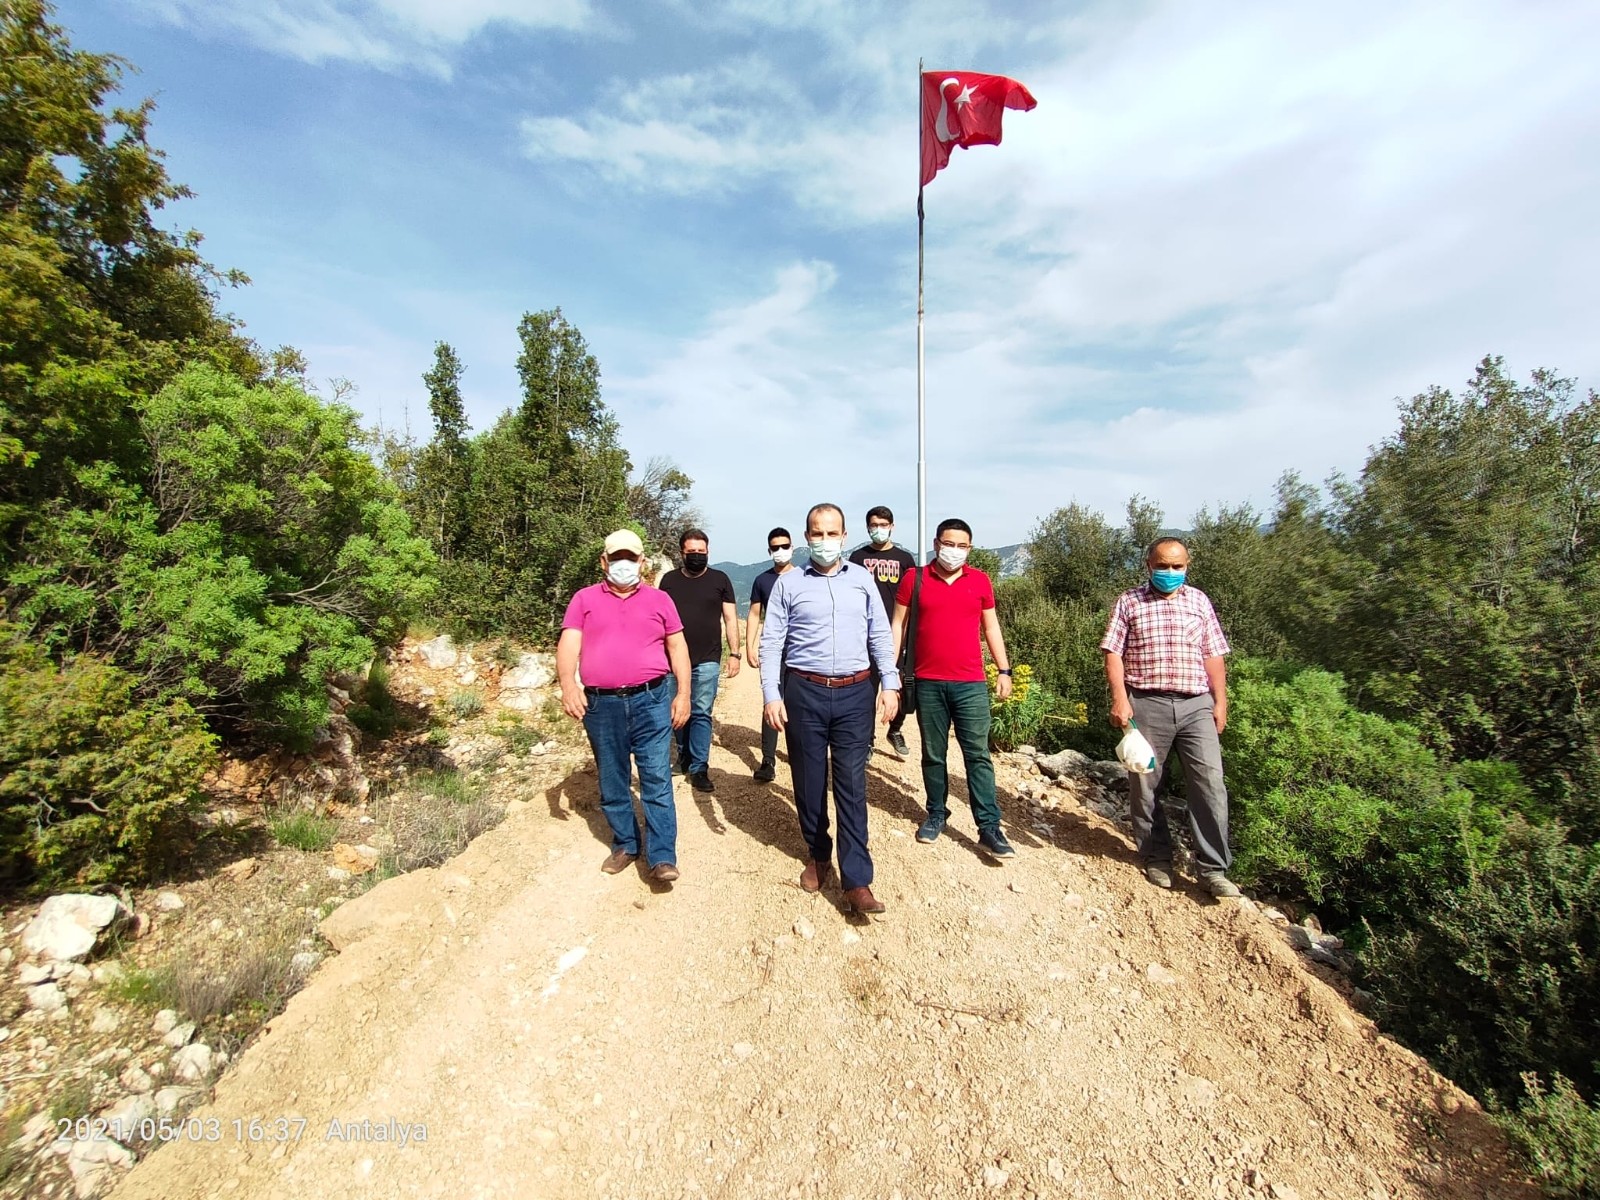 Rüzgar nedeni ile kopan Türk Bayrağı, Kepez Belediyesi ekipleri tarafından değiştirilerek asıldı